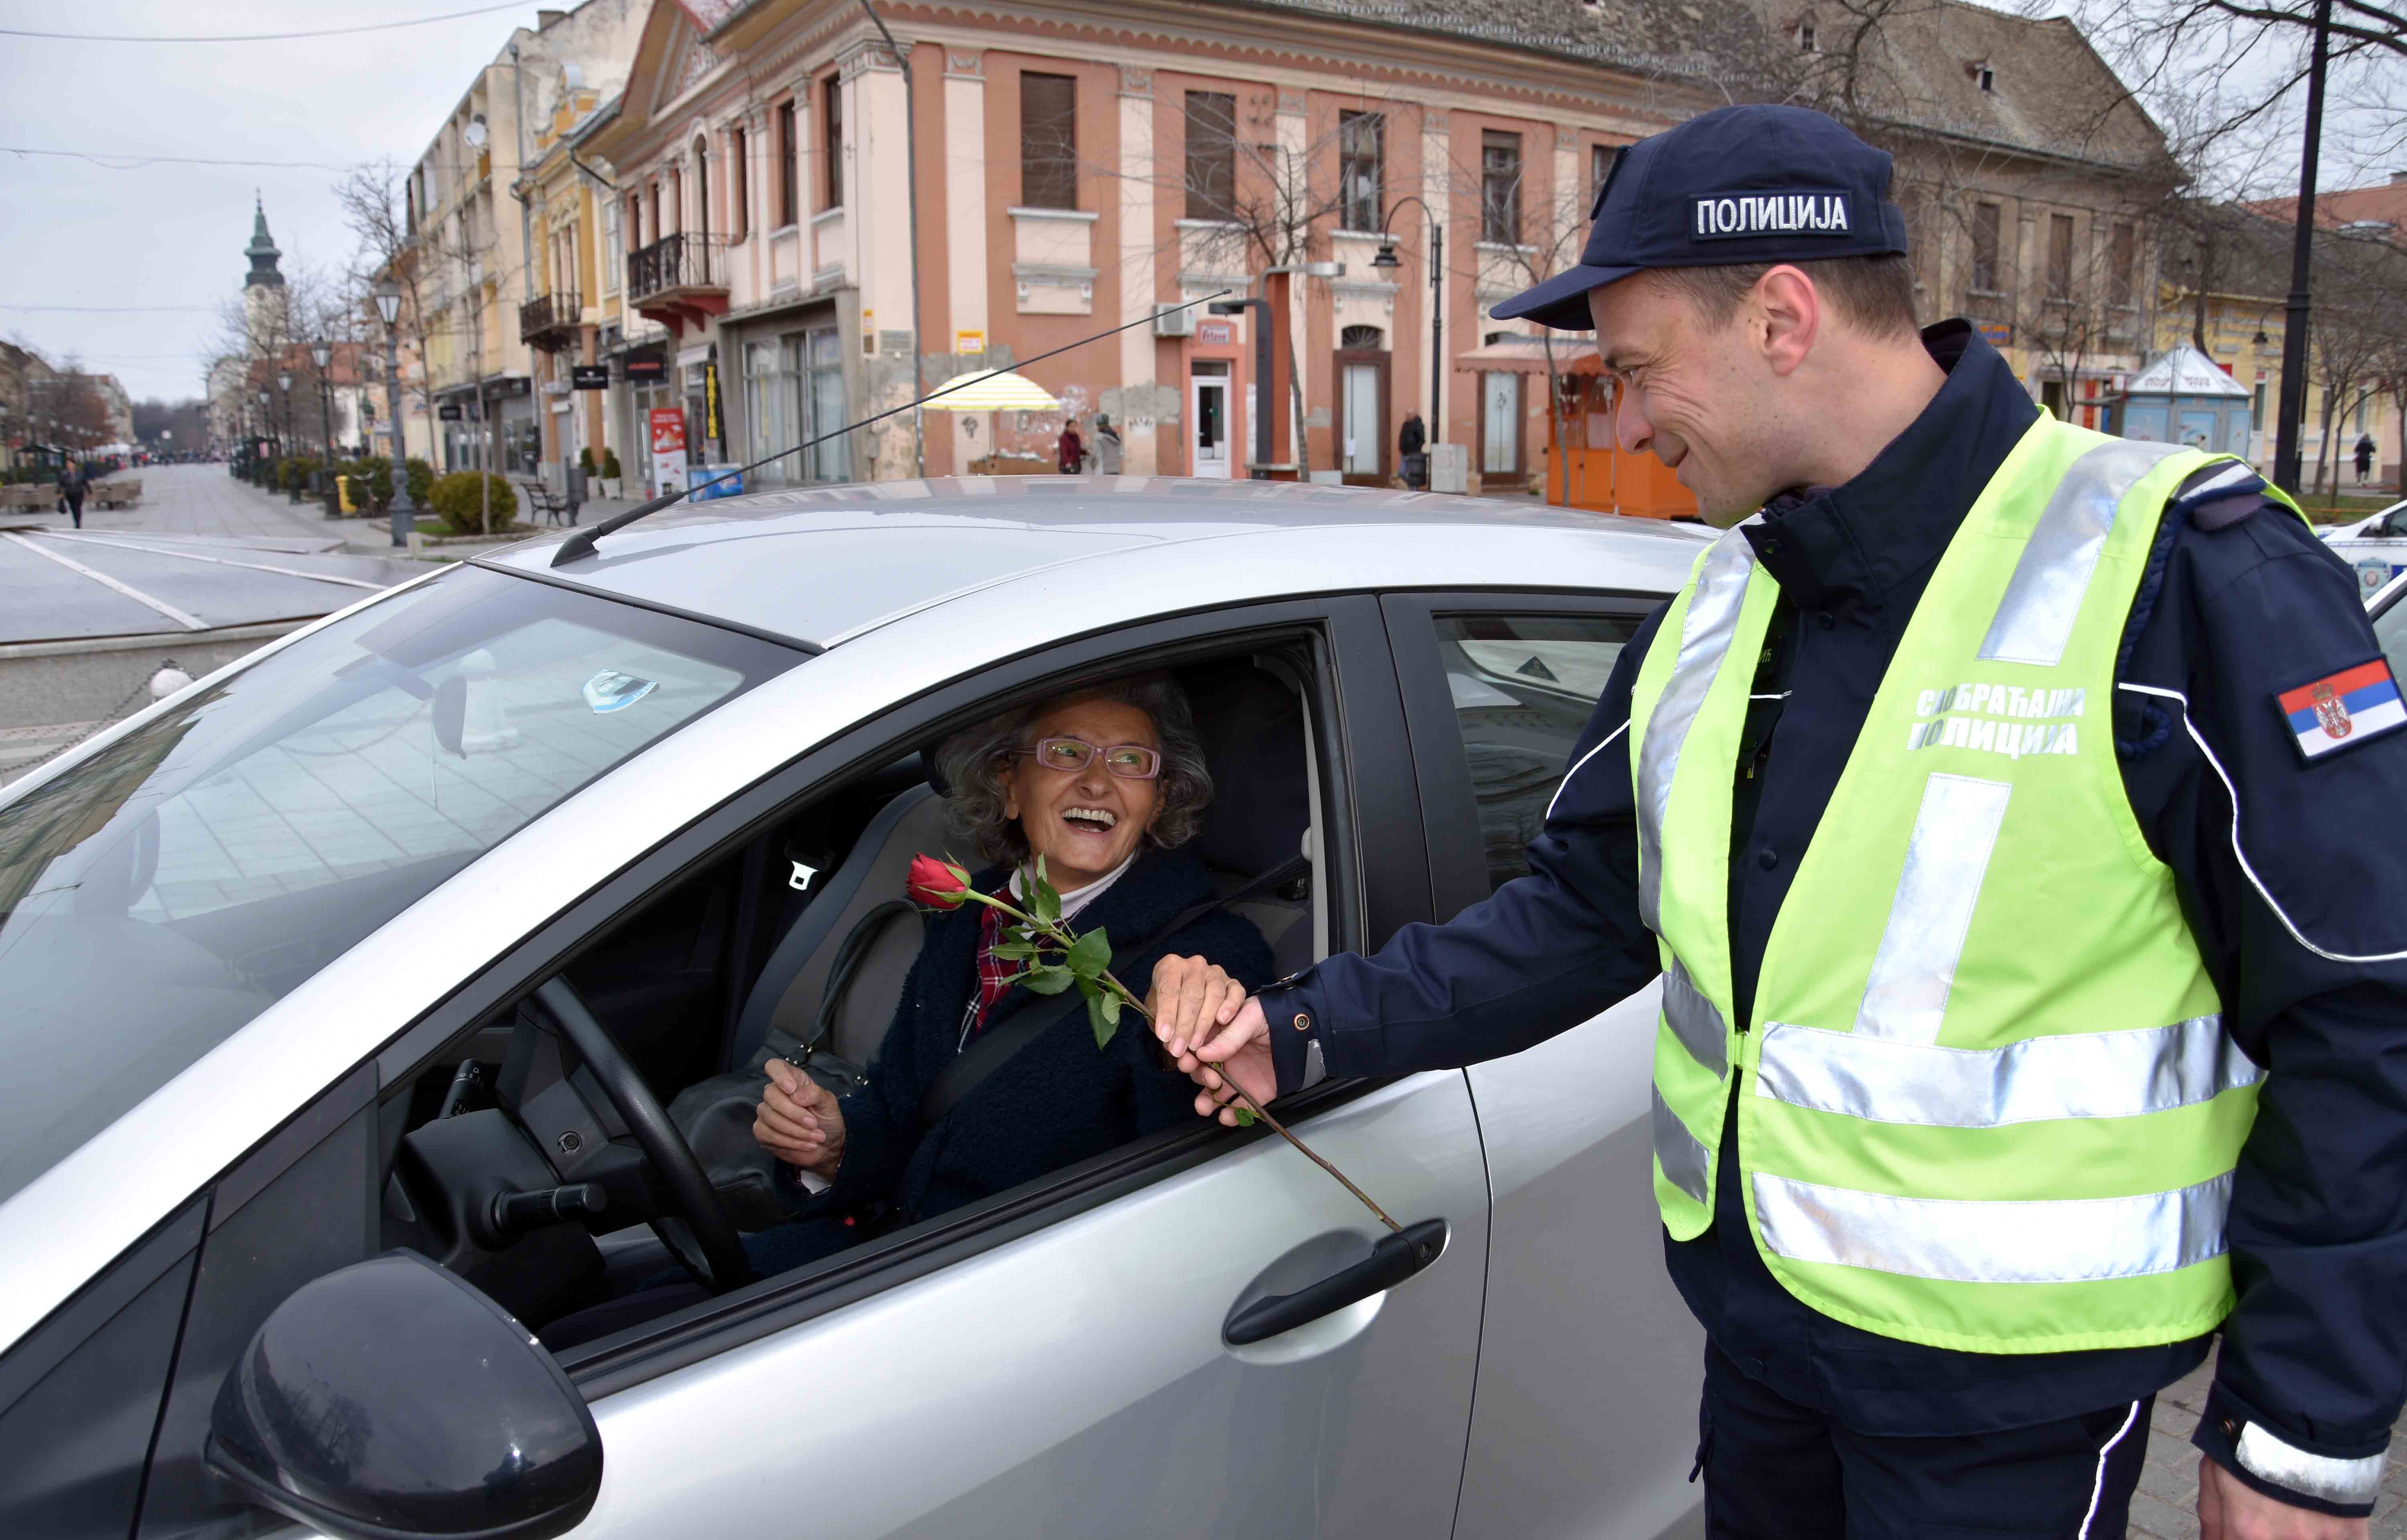 Uz osmeh i ruže, saobraćajni policajci damama čestitali Dan žena – 8. mart